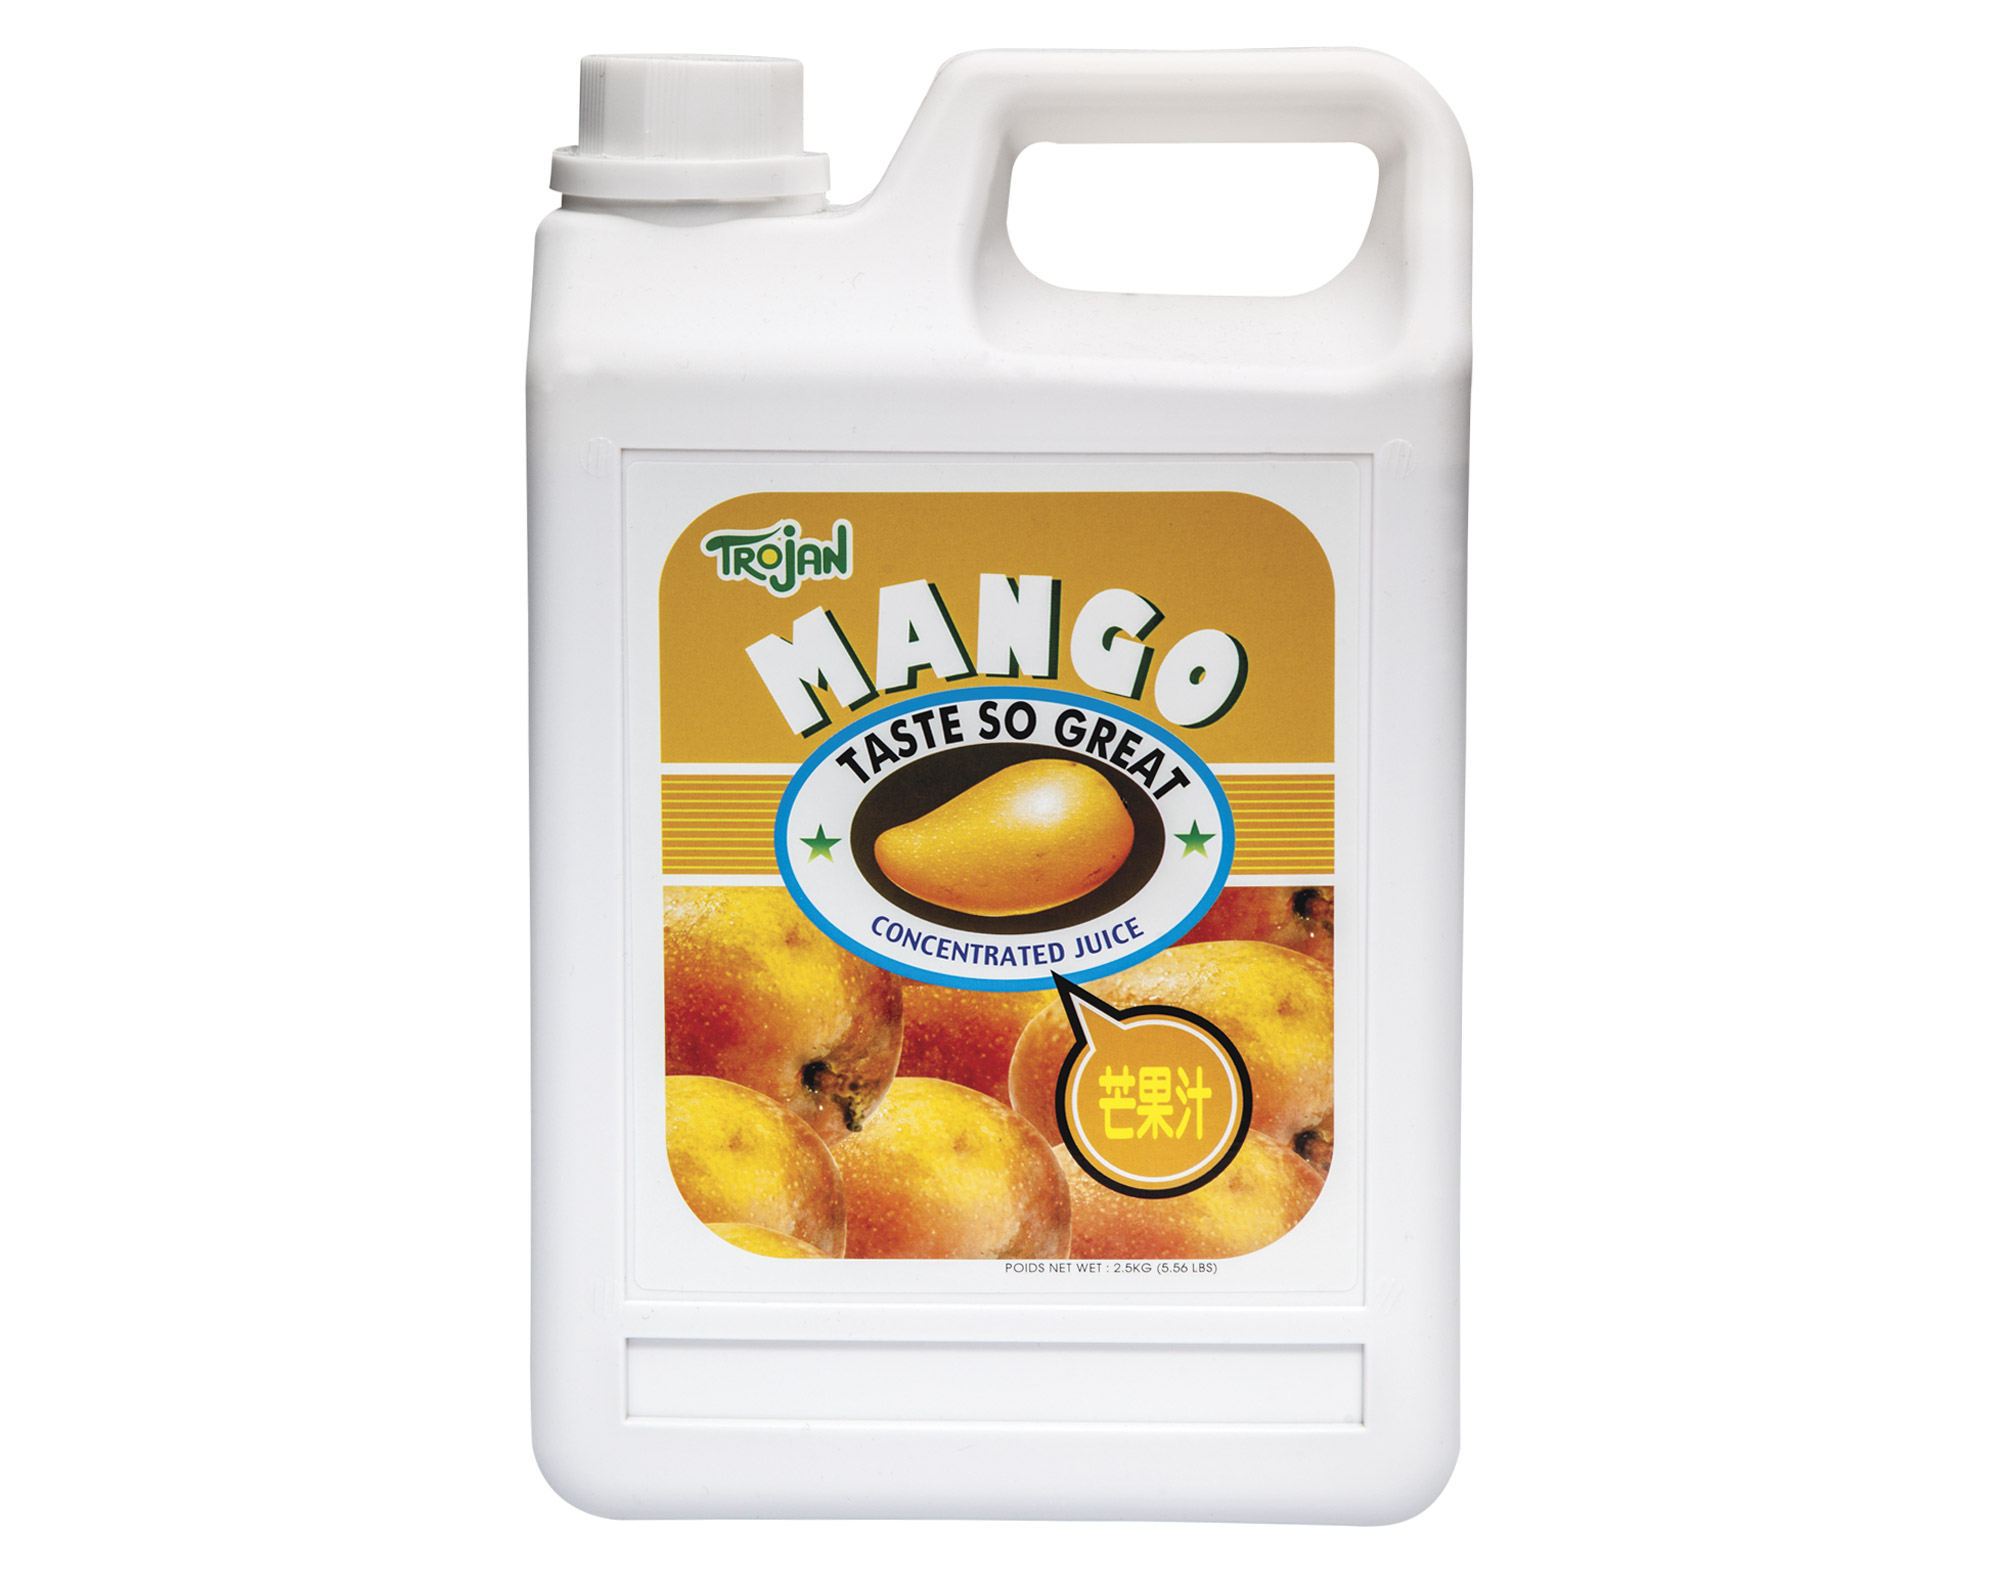 傳佳 濃縮芒果汁   Concentrated Mango Juice